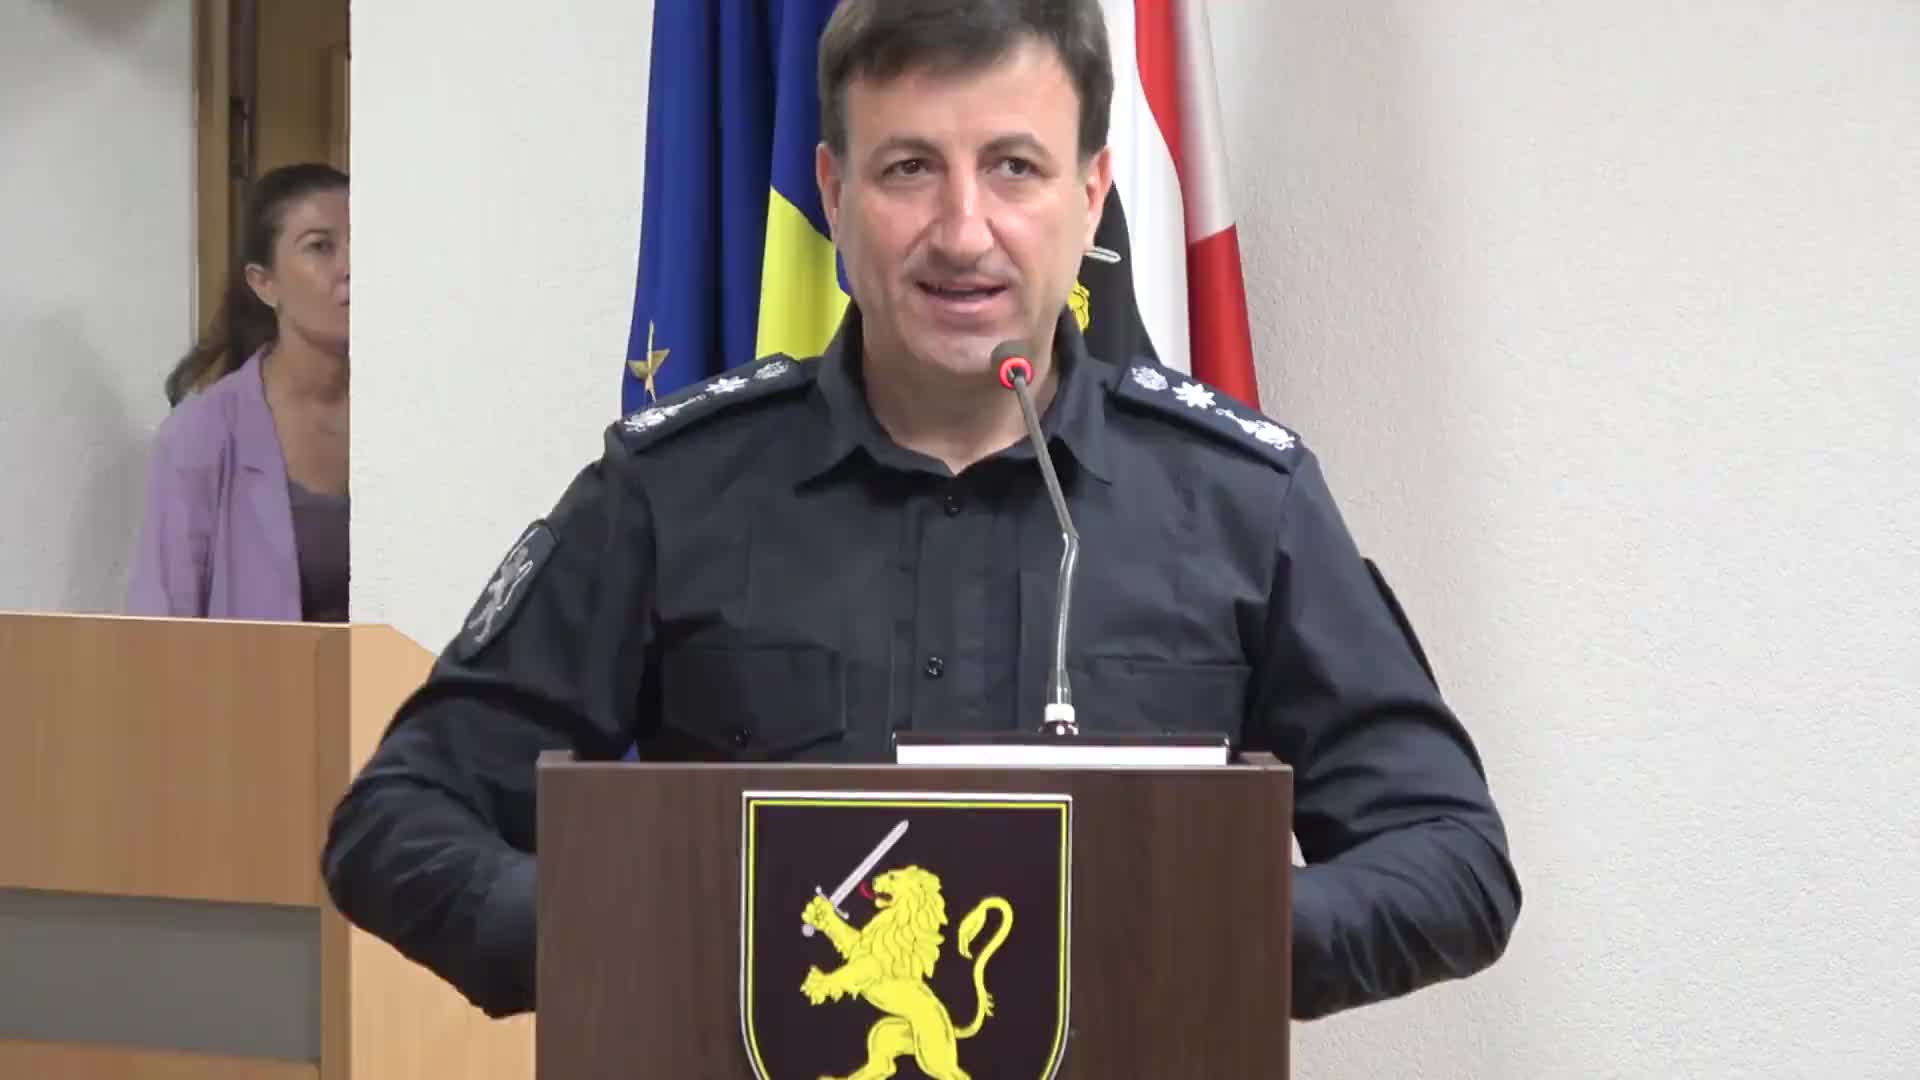 Briefing de presă susținut de șeful Inspectoratului General al Poliției, Viorel Cernăuțeanu, cu privire la măsurile întreprinse de polițiști, în perioada 31 mai-2 iunie, în contextul desfășurării Summitului Comunității Politice Europene